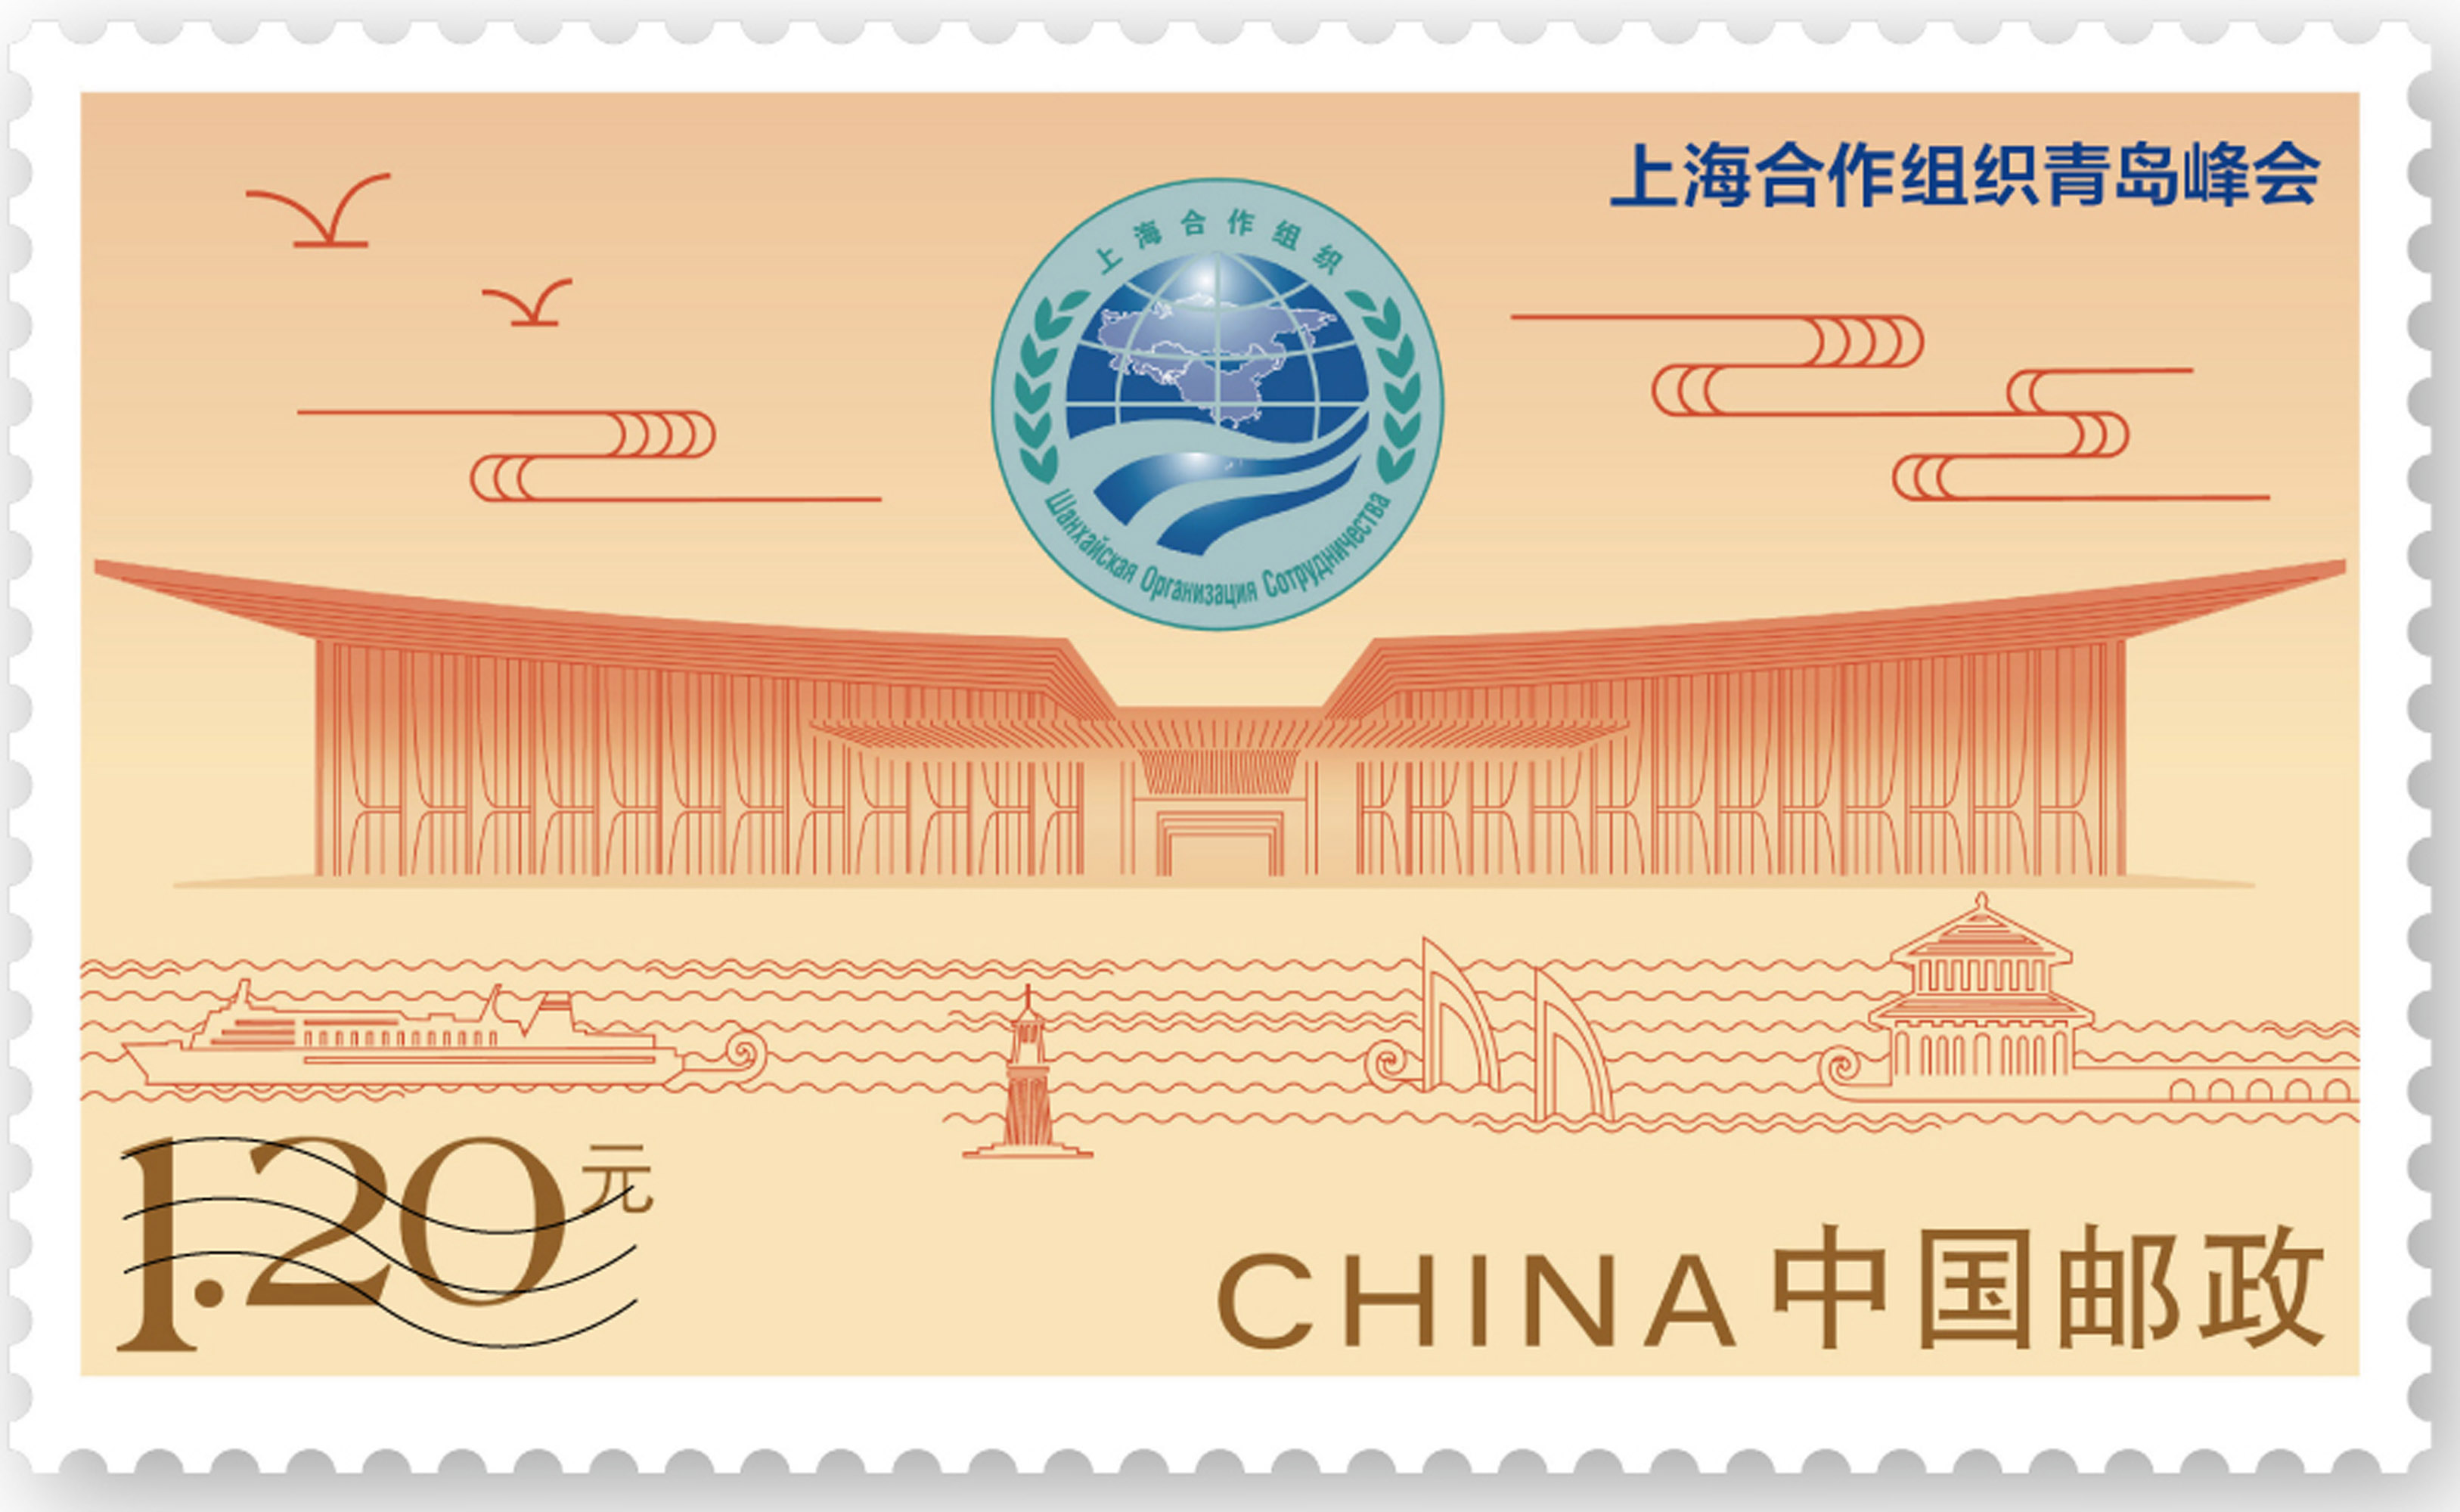 《上海合作组织青岛峰会》纪念邮票发行